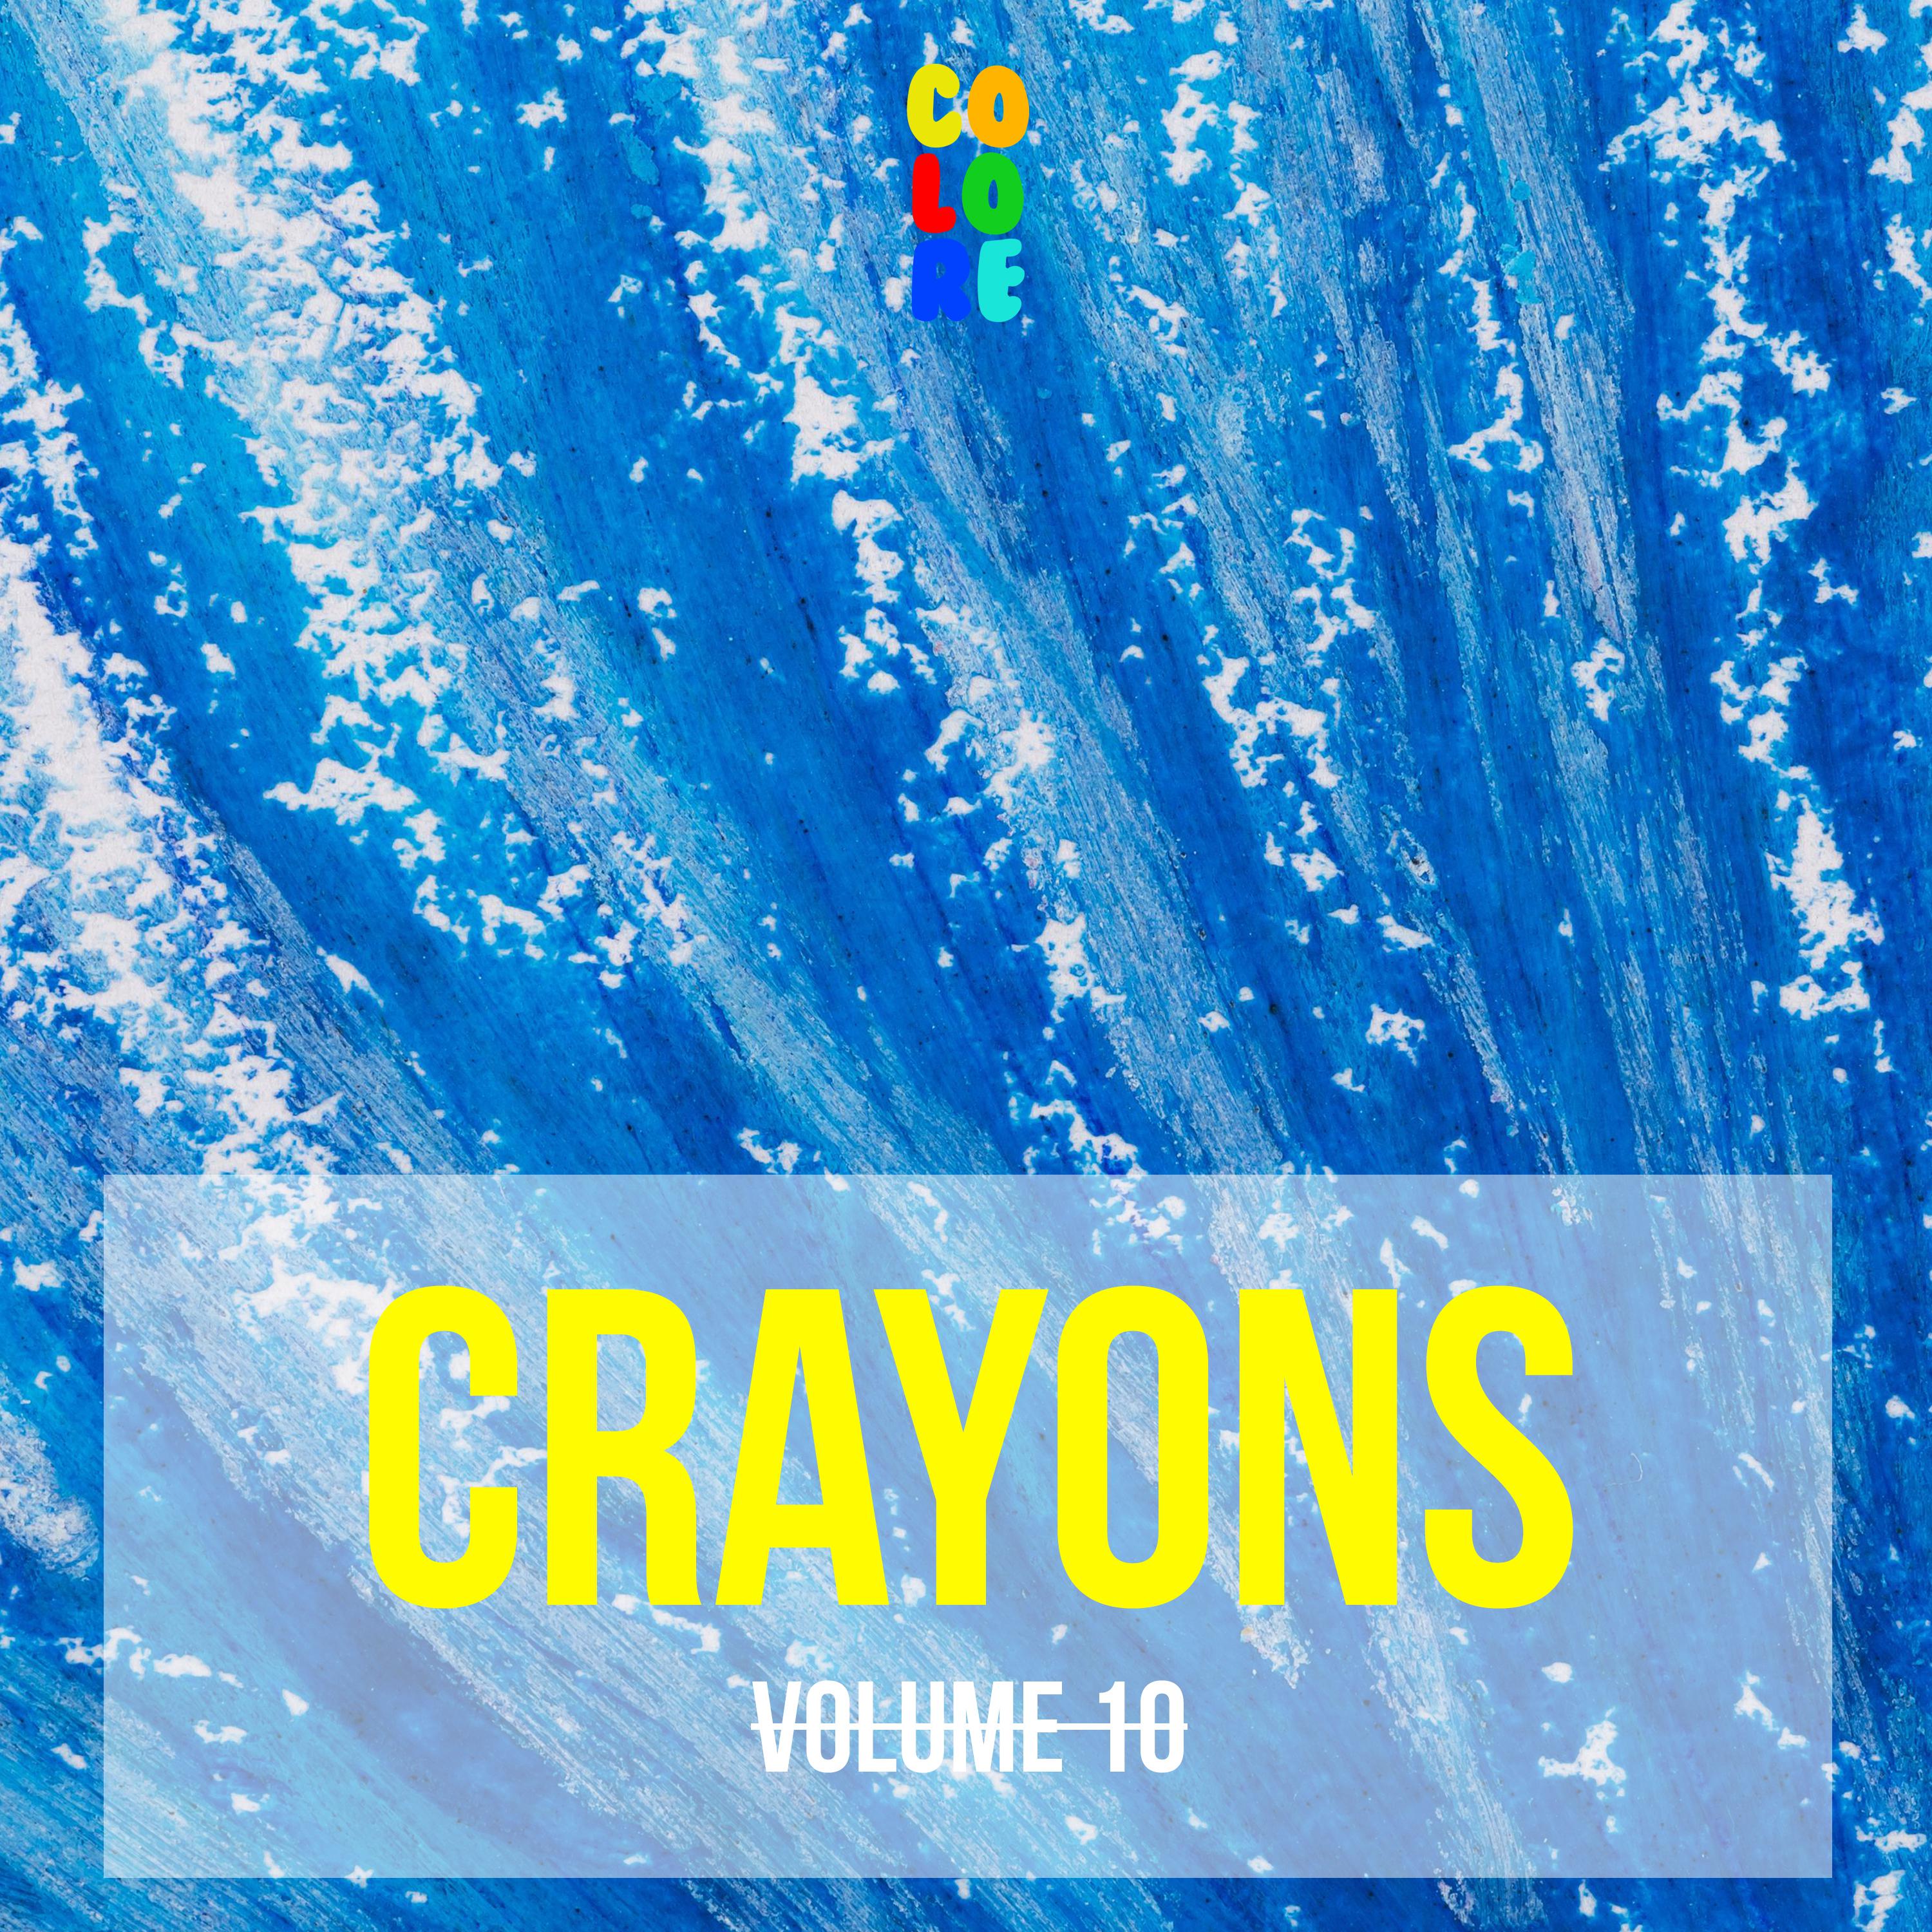 Crayons, Vol. 10